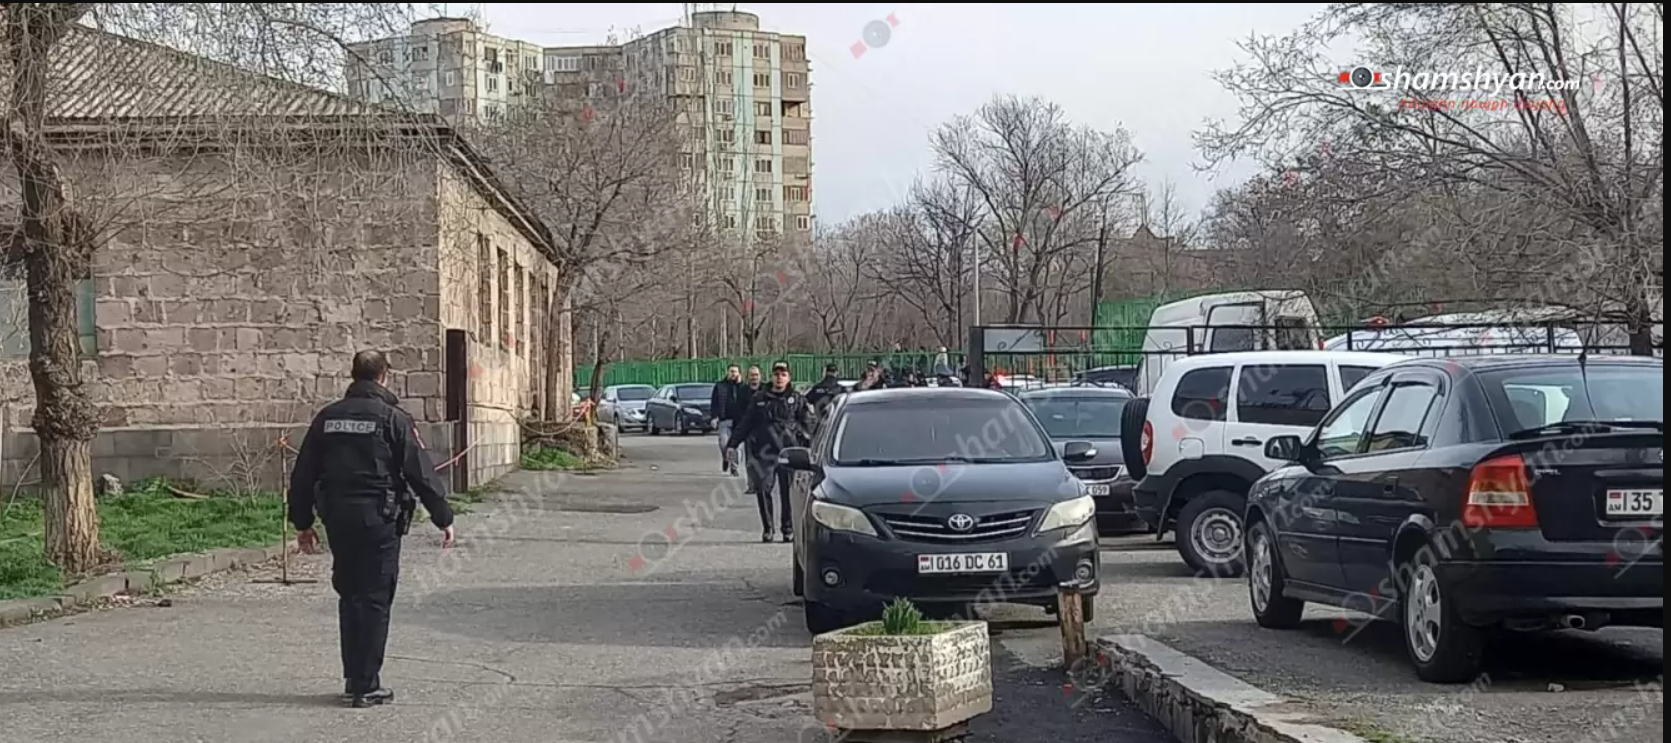 В Ереване люди с оружием ворвались в отделение полиции: возбуждено дело о терроризме. Фото и видео